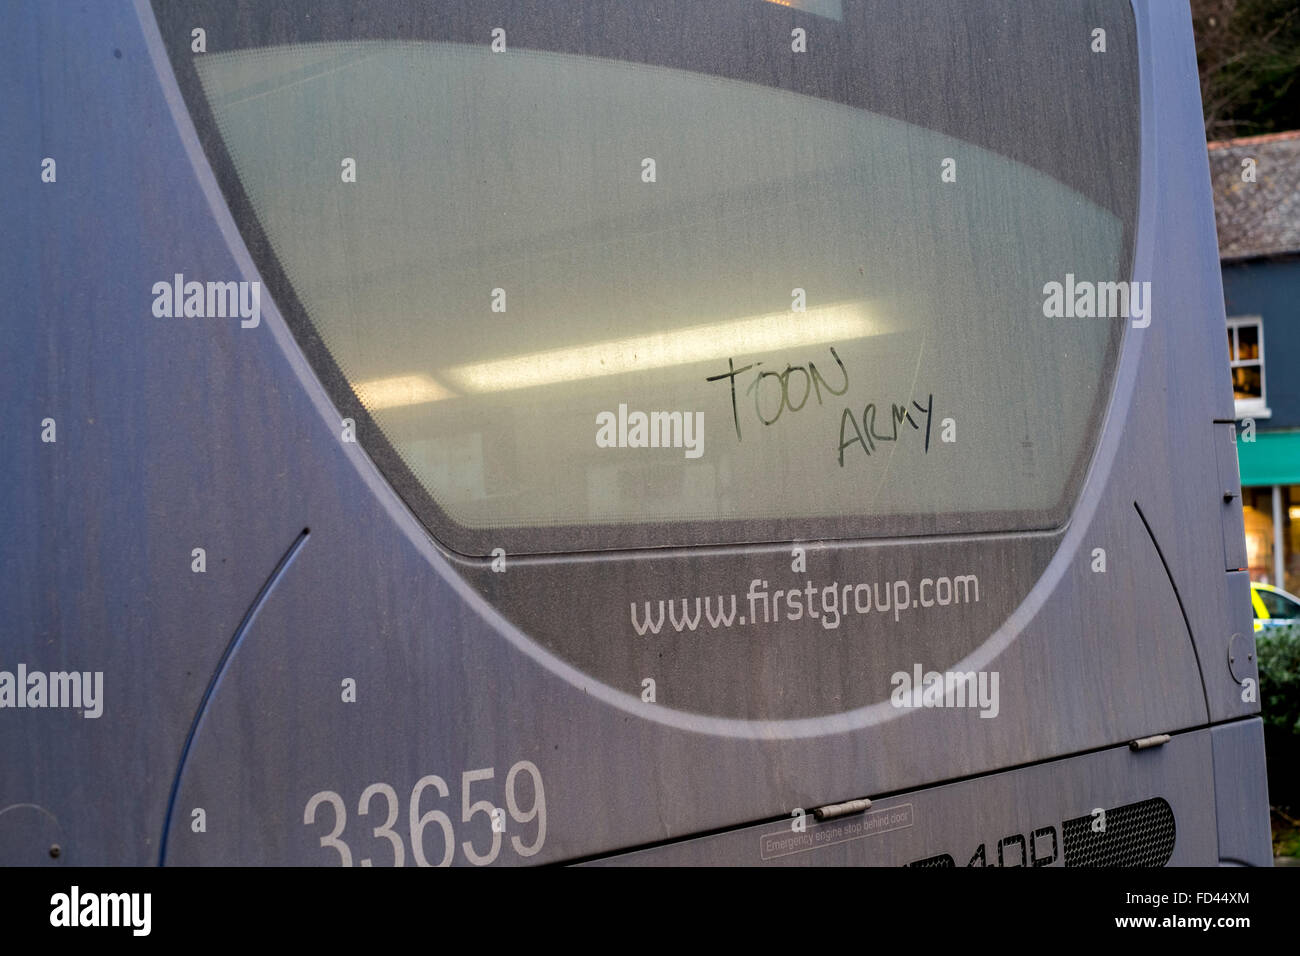 Toon Army, il soprannome di Newcastle United FC, scritta sul lunotto posteriore di un autobus in Falmouth, Cornwall Foto Stock